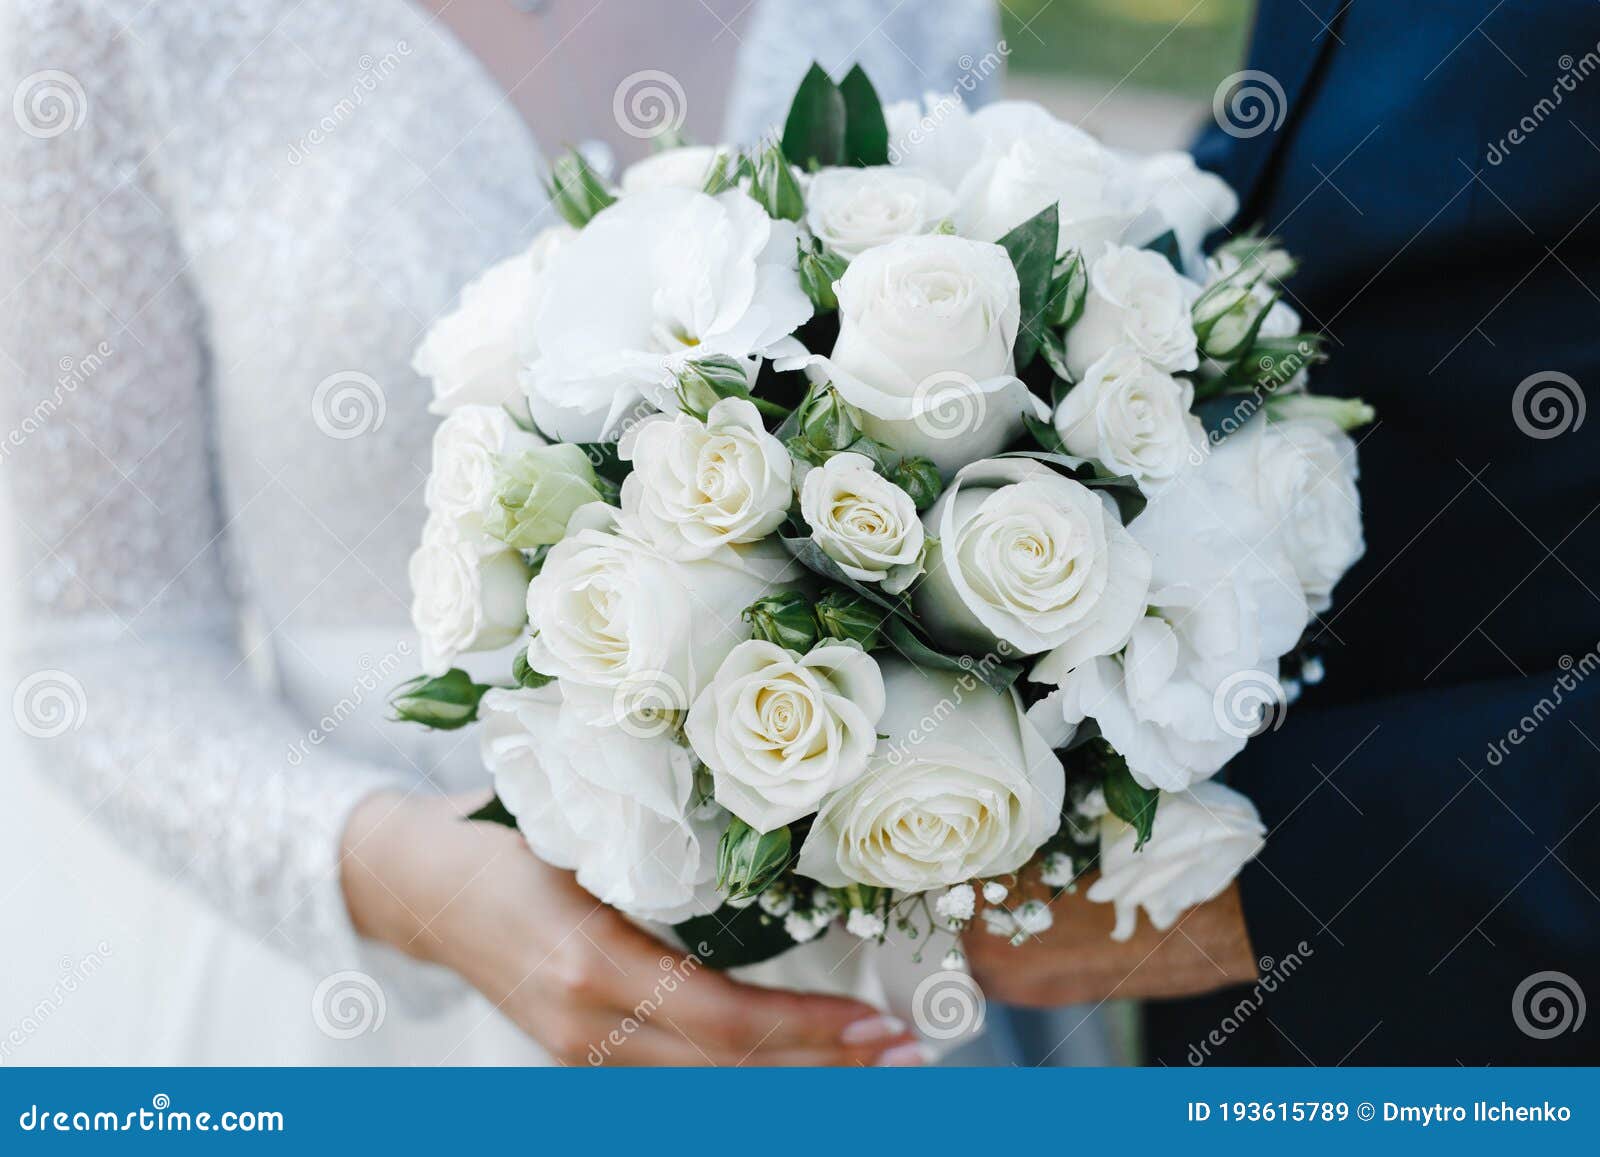 Noiva E Noiva Seguram Um Buquê De Noivas De Rosas Brancas Imagem de Stock -  Imagem de evento, esposa: 193615789